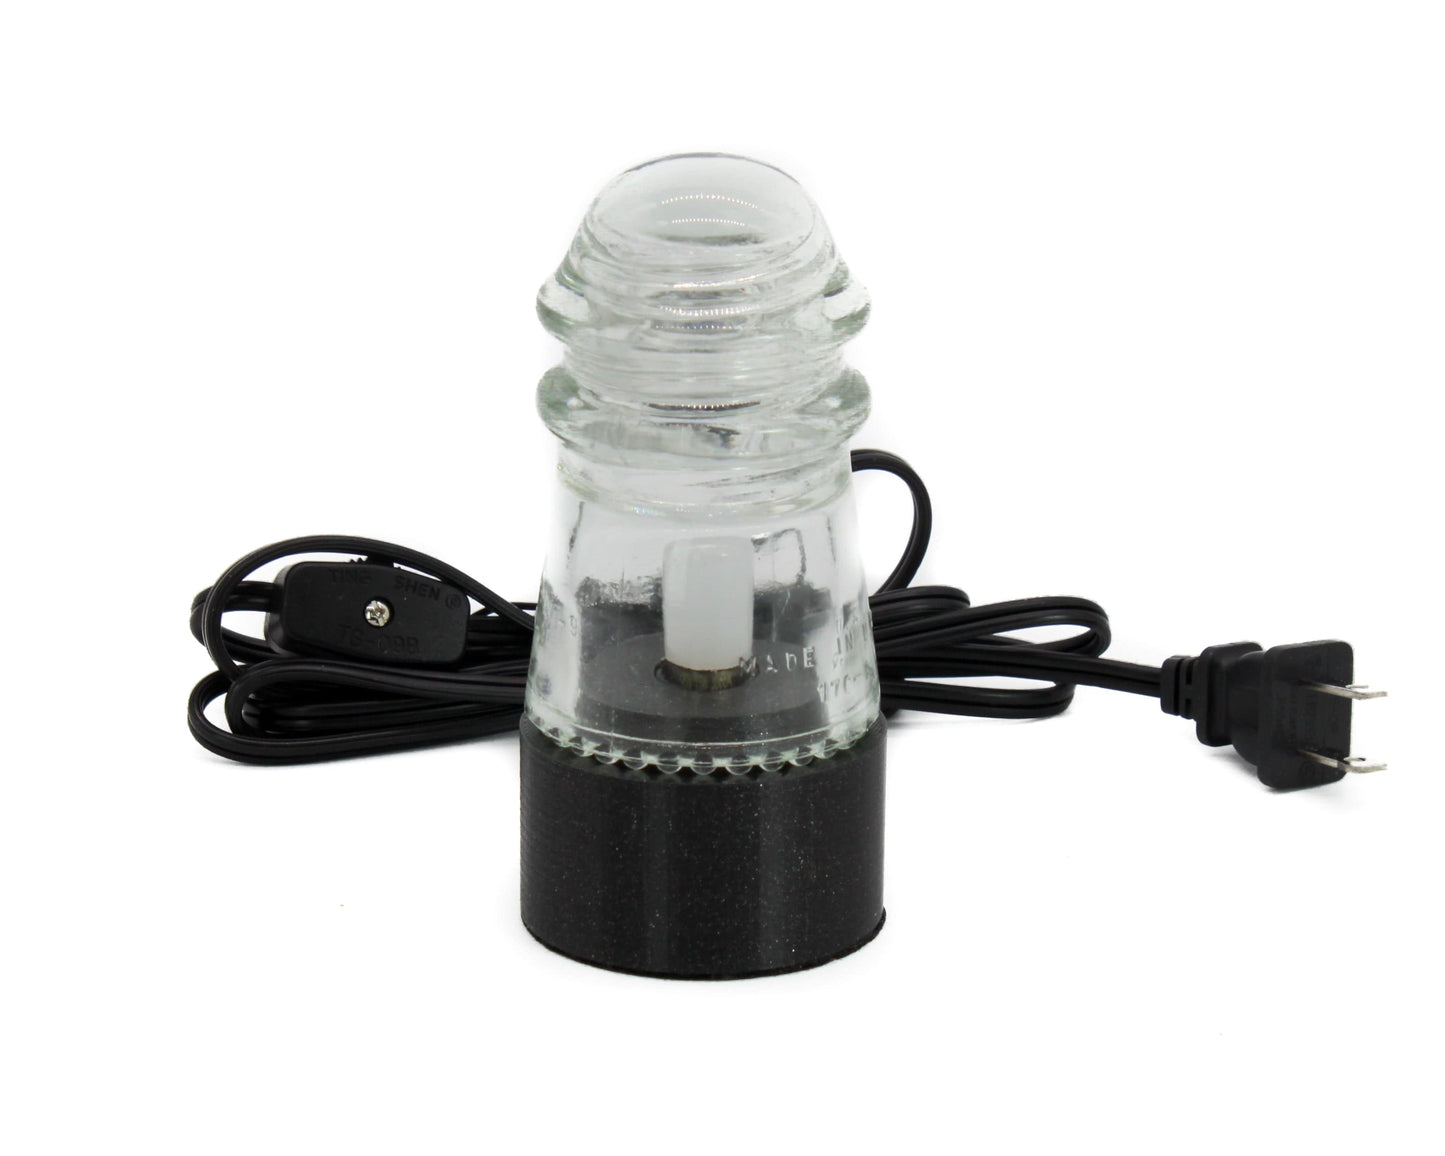 LightAndTimeArt Lamp base Lamp Base for "Hemingray-9, №12" Glass Insulators, Industrial Lighting, Man Cave Decor